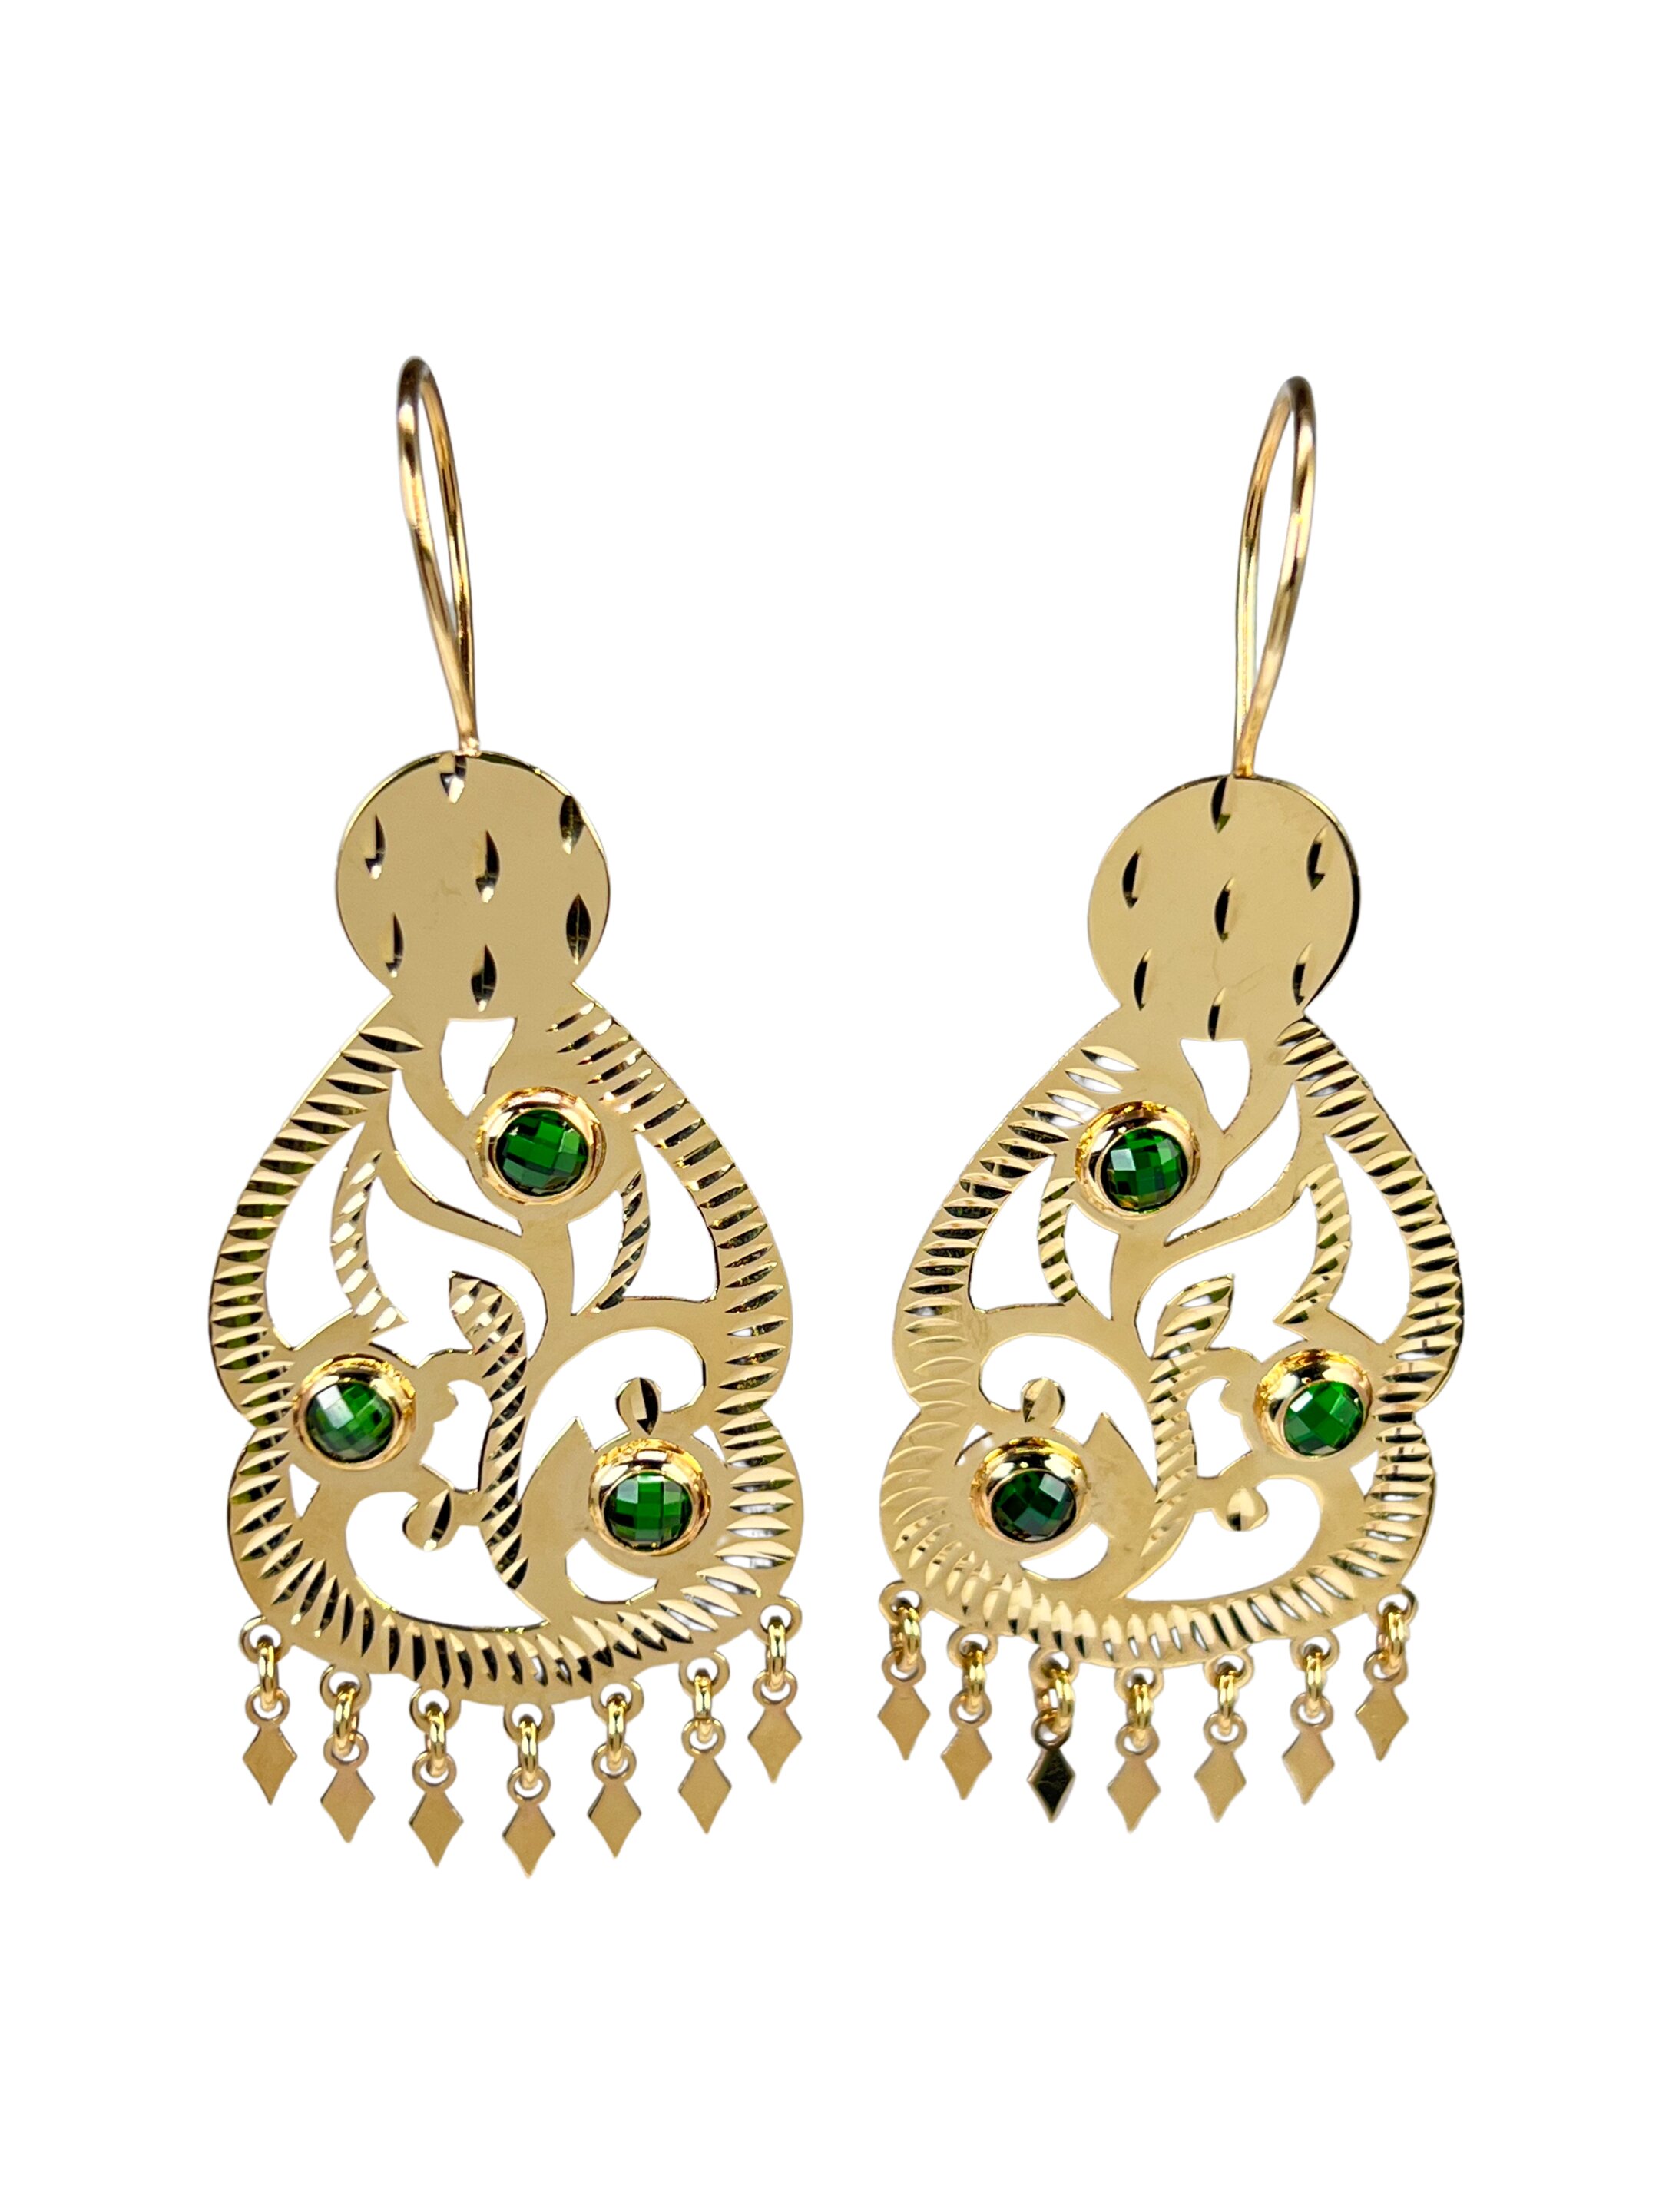 Orecchini pendenti in oro con zirconi verdi e incisione Loren